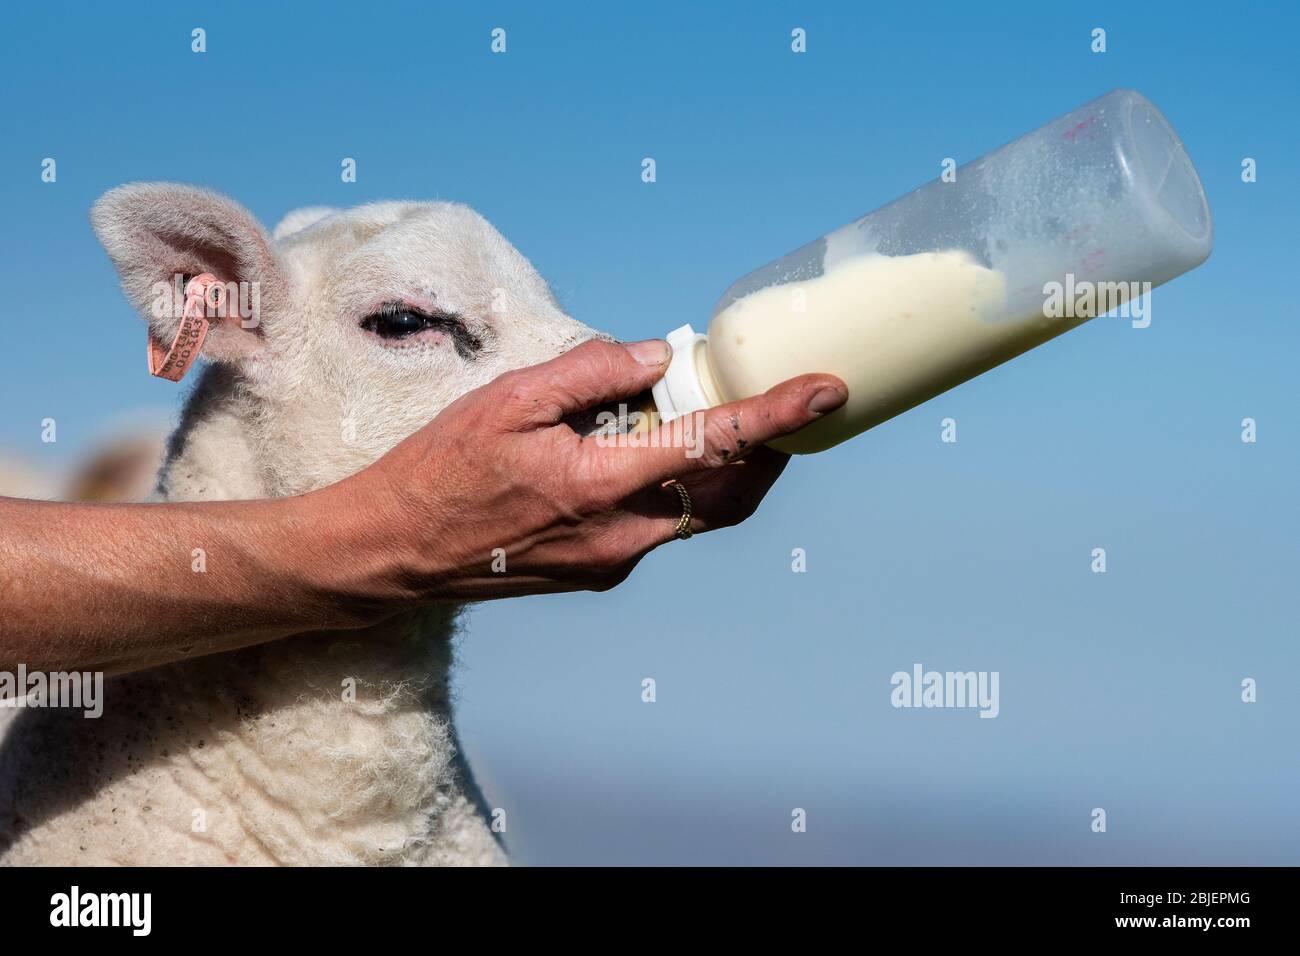 Un mignon agneau d'animal de compagnie est nourri à partir d'une bouteille. North Yorkshire, Royaume-Uni. Banque D'Images